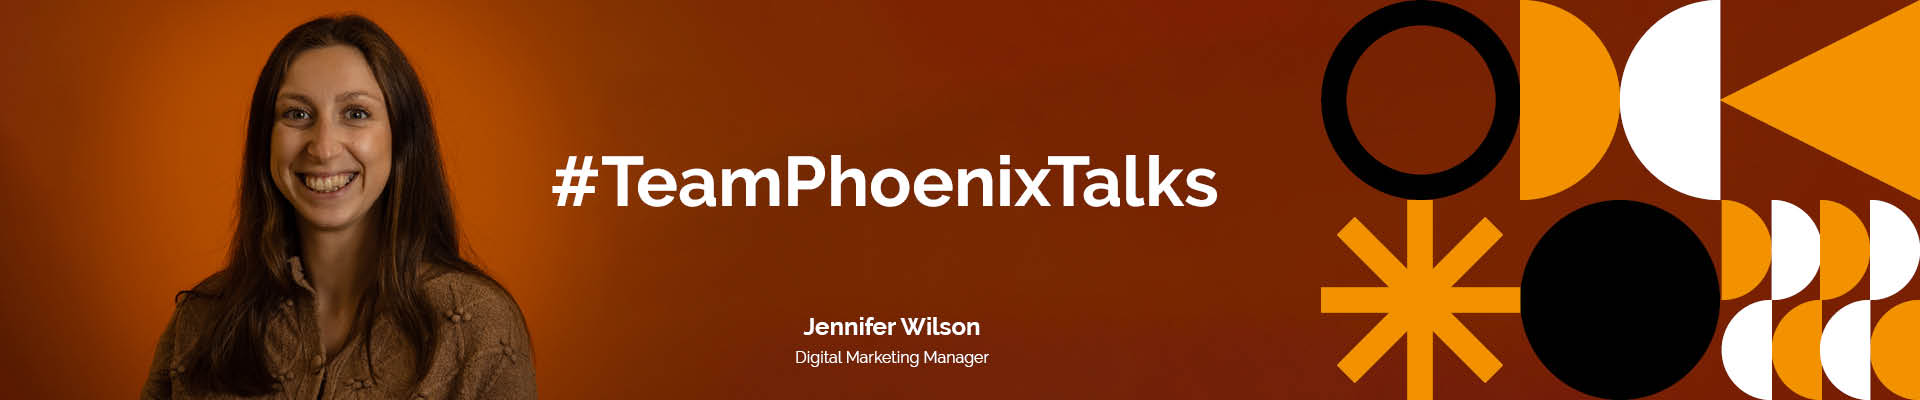 Team Phoenix Talks: Jennifer Wilson